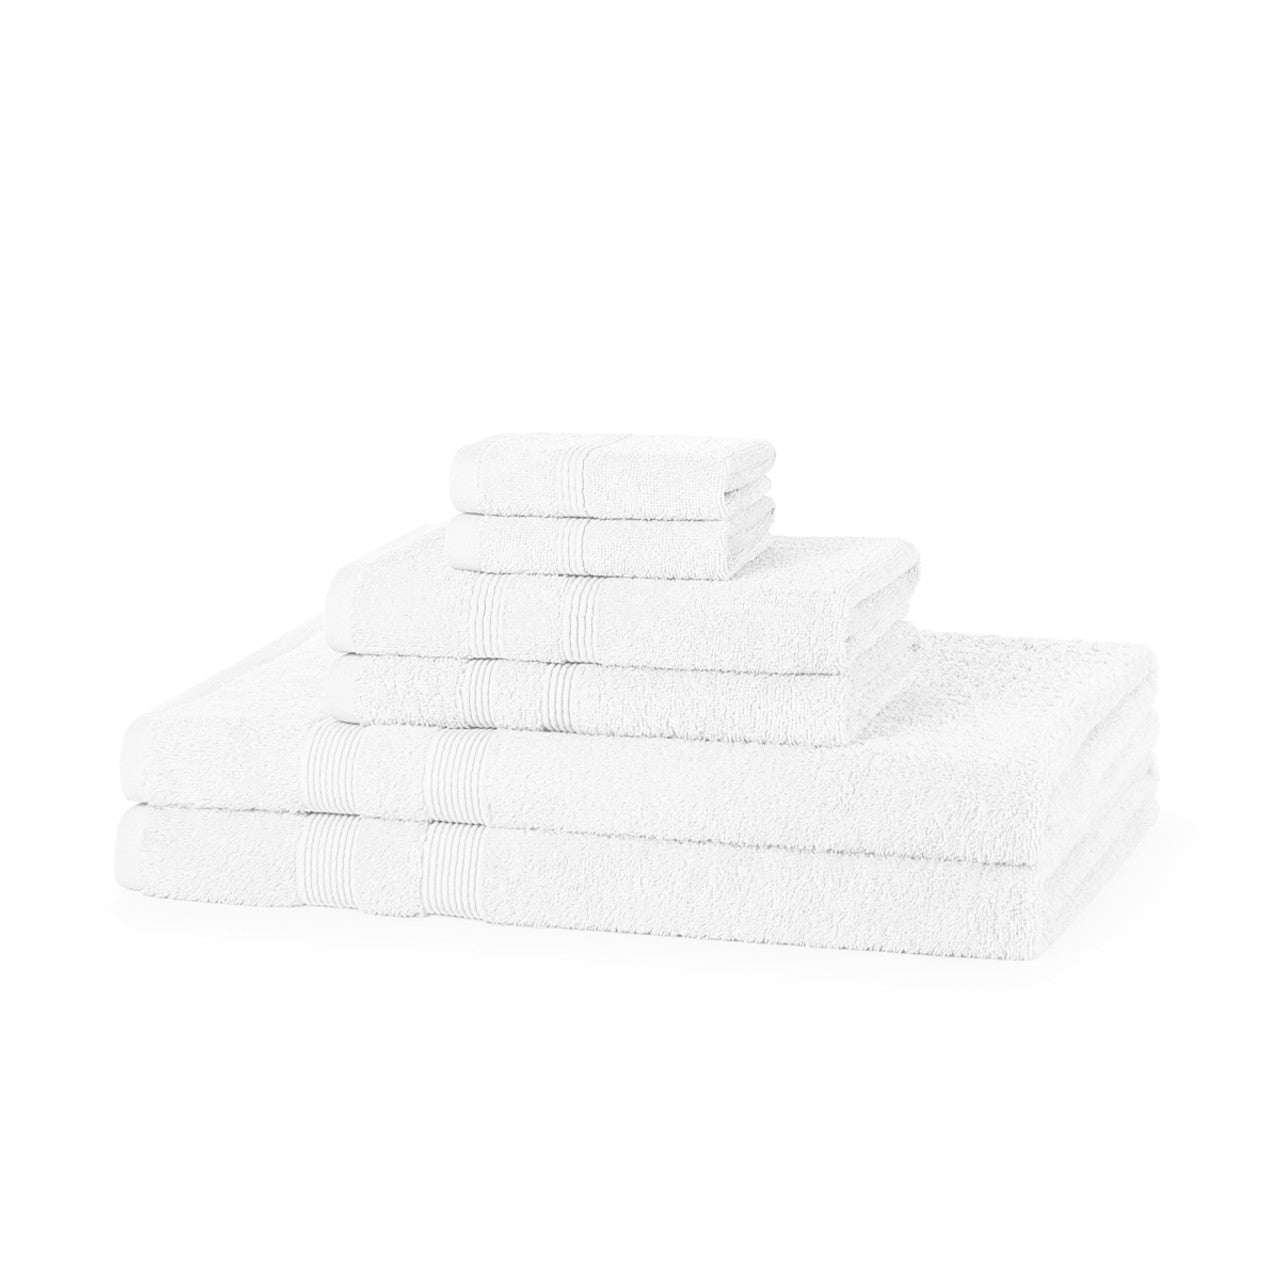 Super Soft 6 Piece 500GSM Towel Bale - Luxury 2 Face Cloths, 2 Hand Towels, 2 Bath Sheets